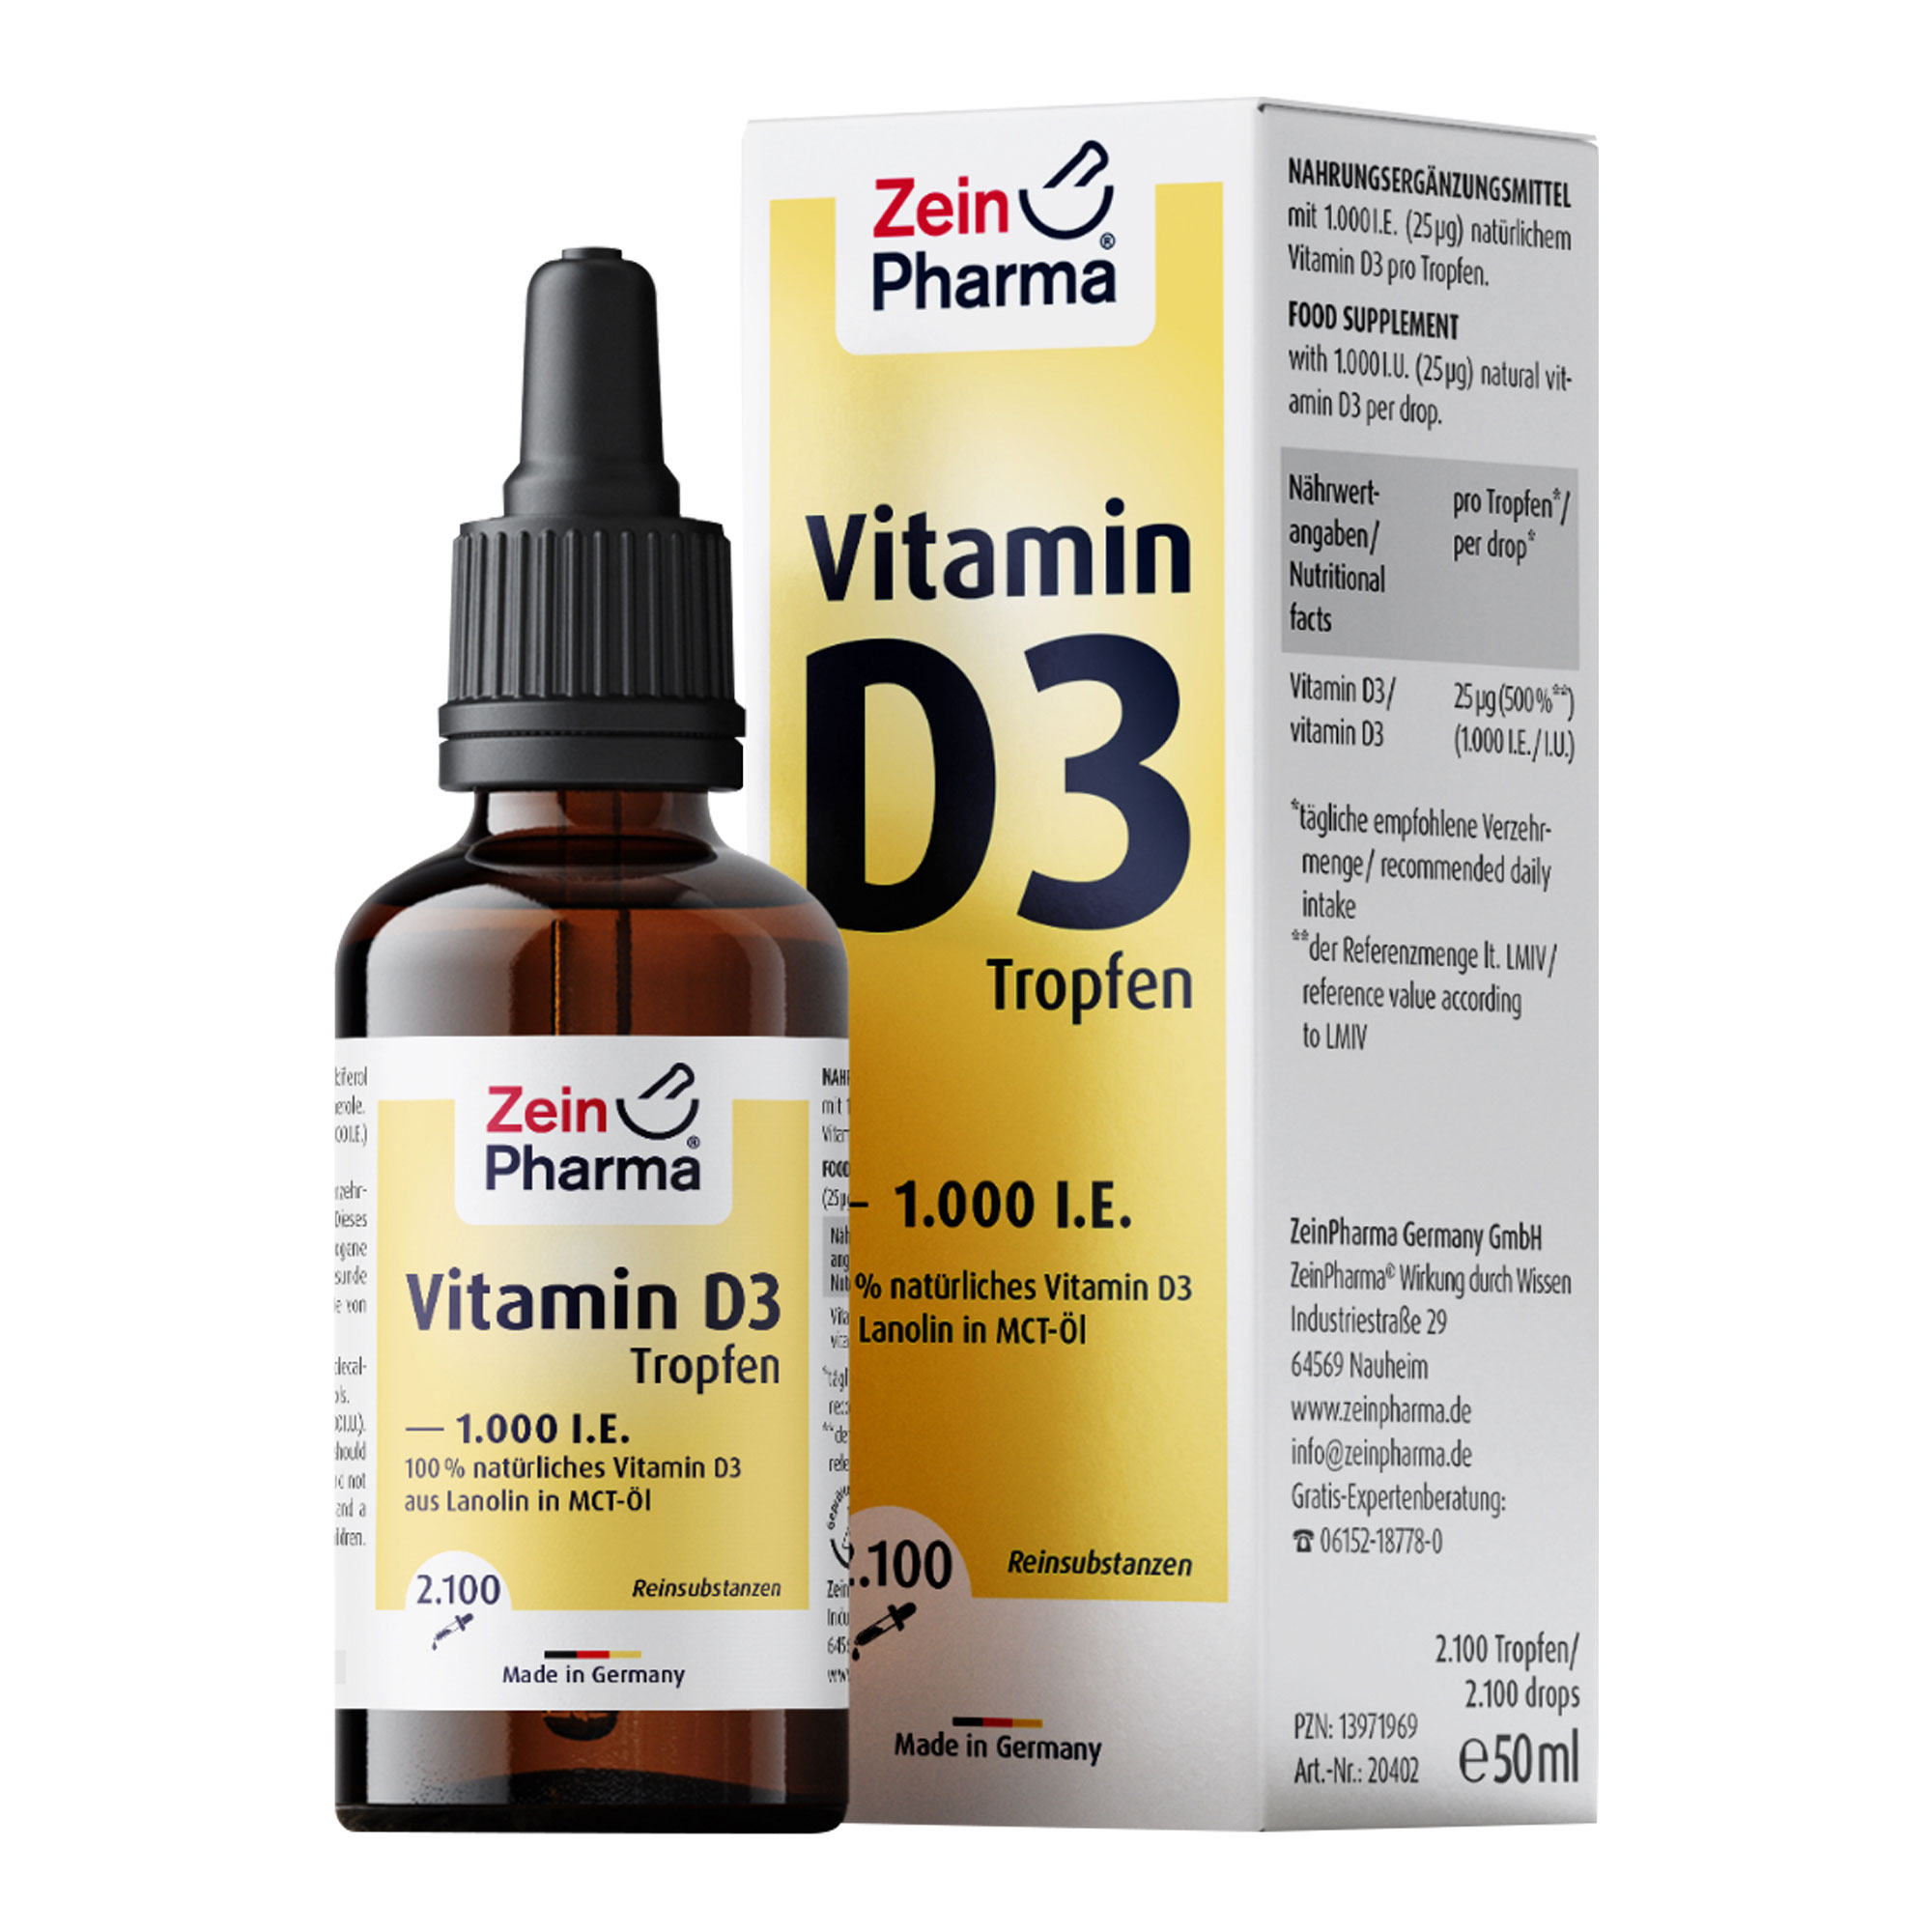 Nahrungsergänzungsmittel mit 1.000 I.E. (25 μg) natürlichem Cholecalciferol (Vitamin D3) pro Tropfen.